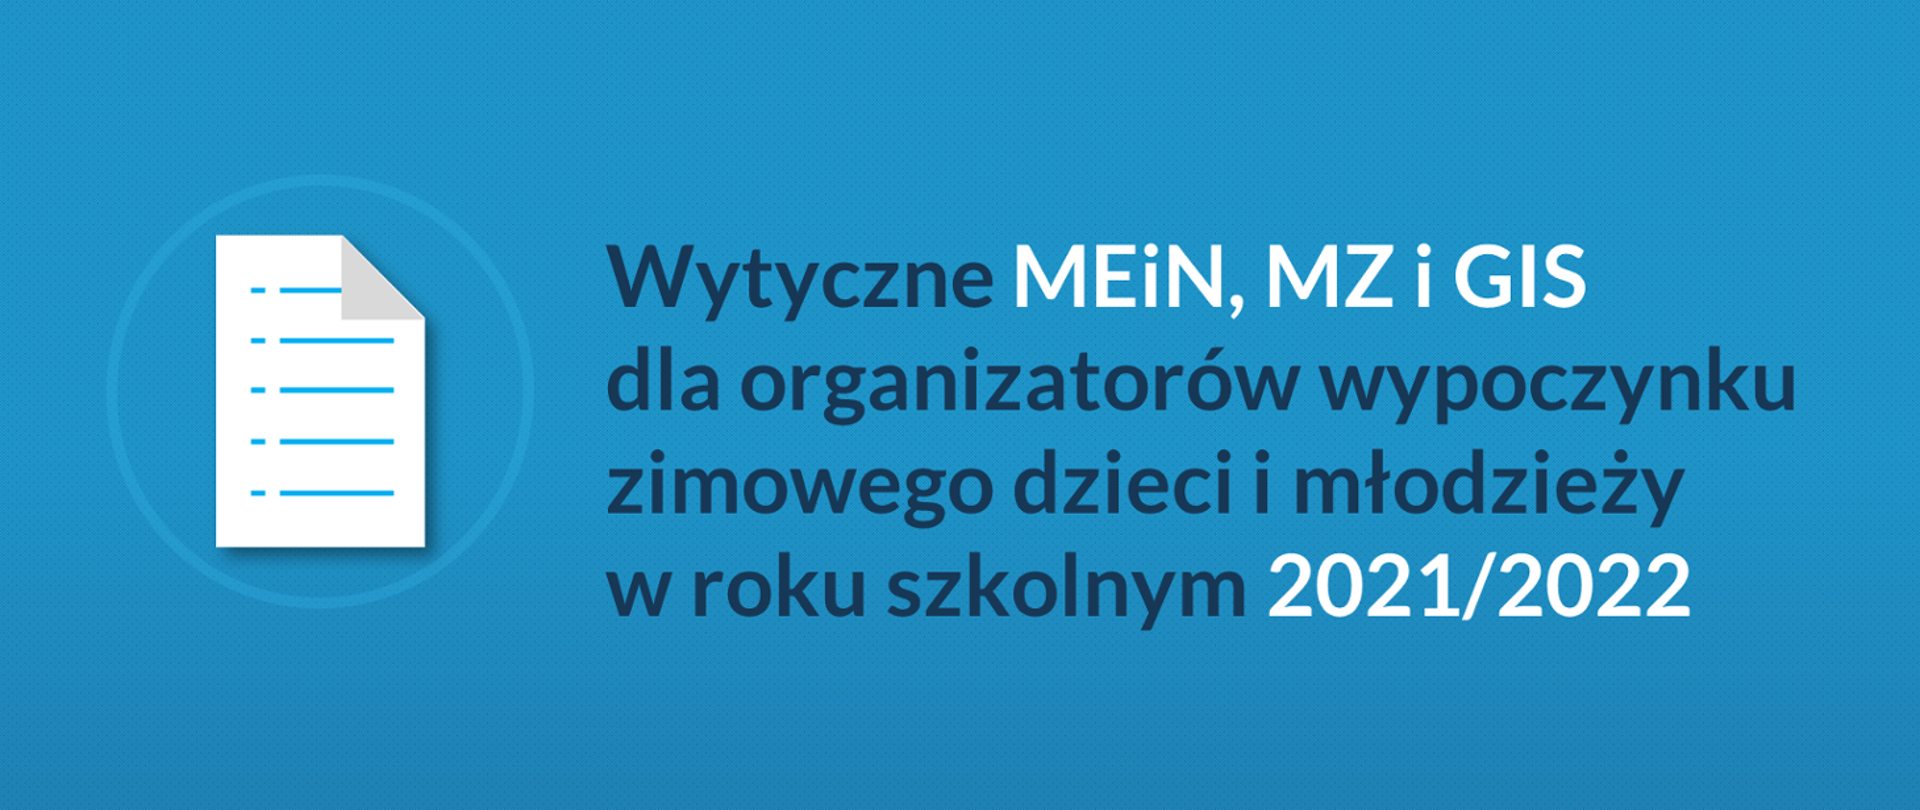 Grafika z tekstem: Wytyczne MEiN, MZ i GIS dla organizatorów wypoczynku zimowego dzieci i młodzieży w roku szkolnym 2021/2022